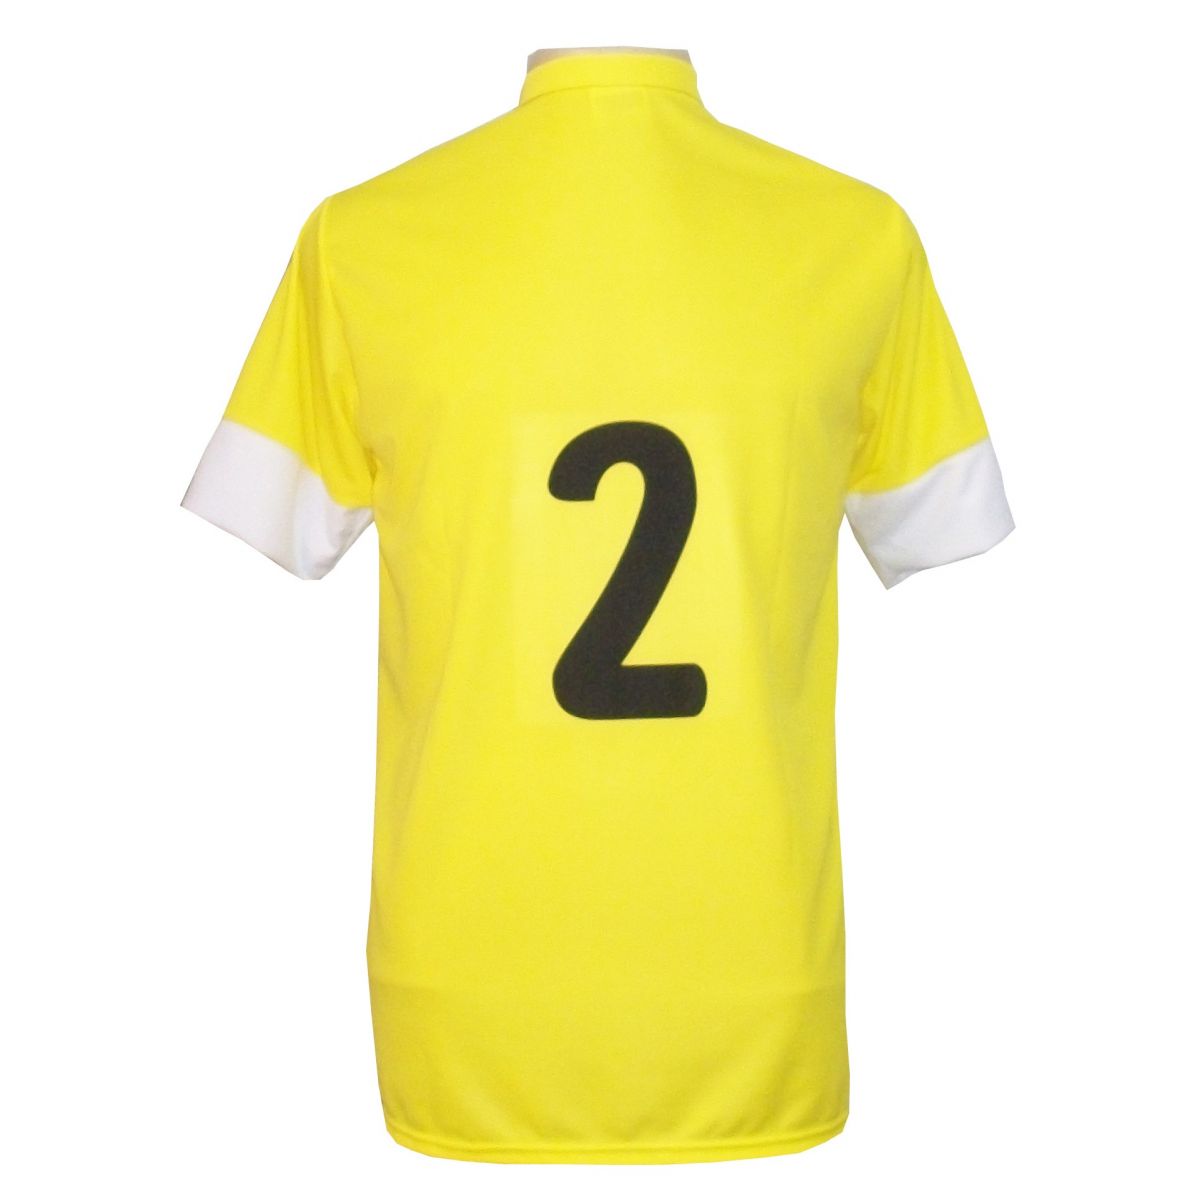 Jogo de Camisa com 14 unidades modelo Sporting Amarelo/Preto/Branco